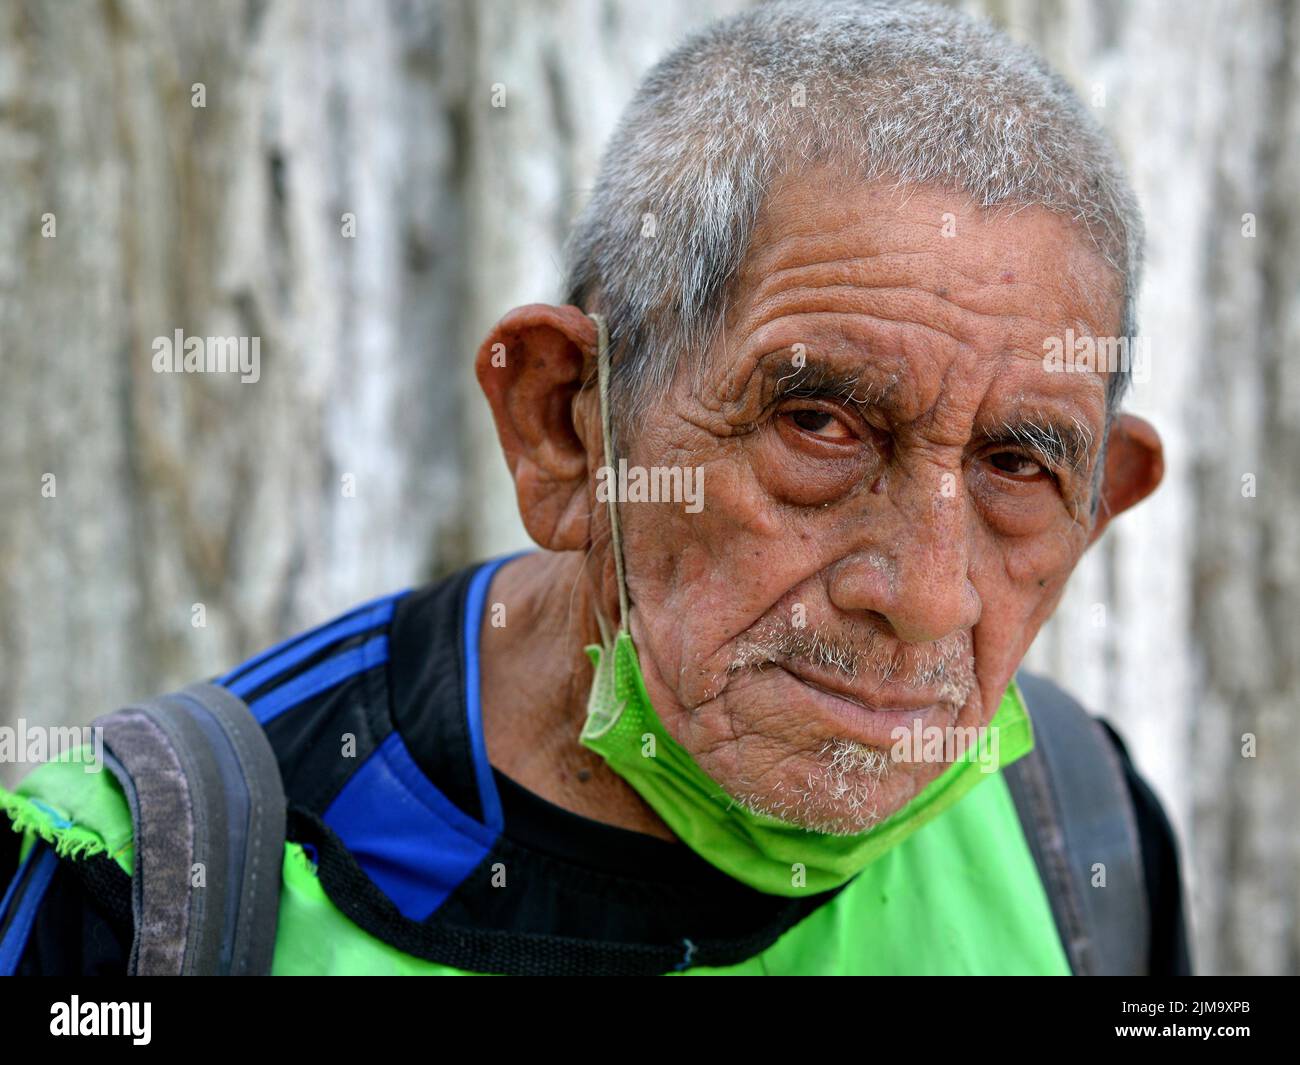 Der arme alte mexikanische Rentner mit selbstgemachter Gesichtsmaske aus grünem Stoff unter seinem Kinn blickt den Zuschauer lautlos an. Stockfoto